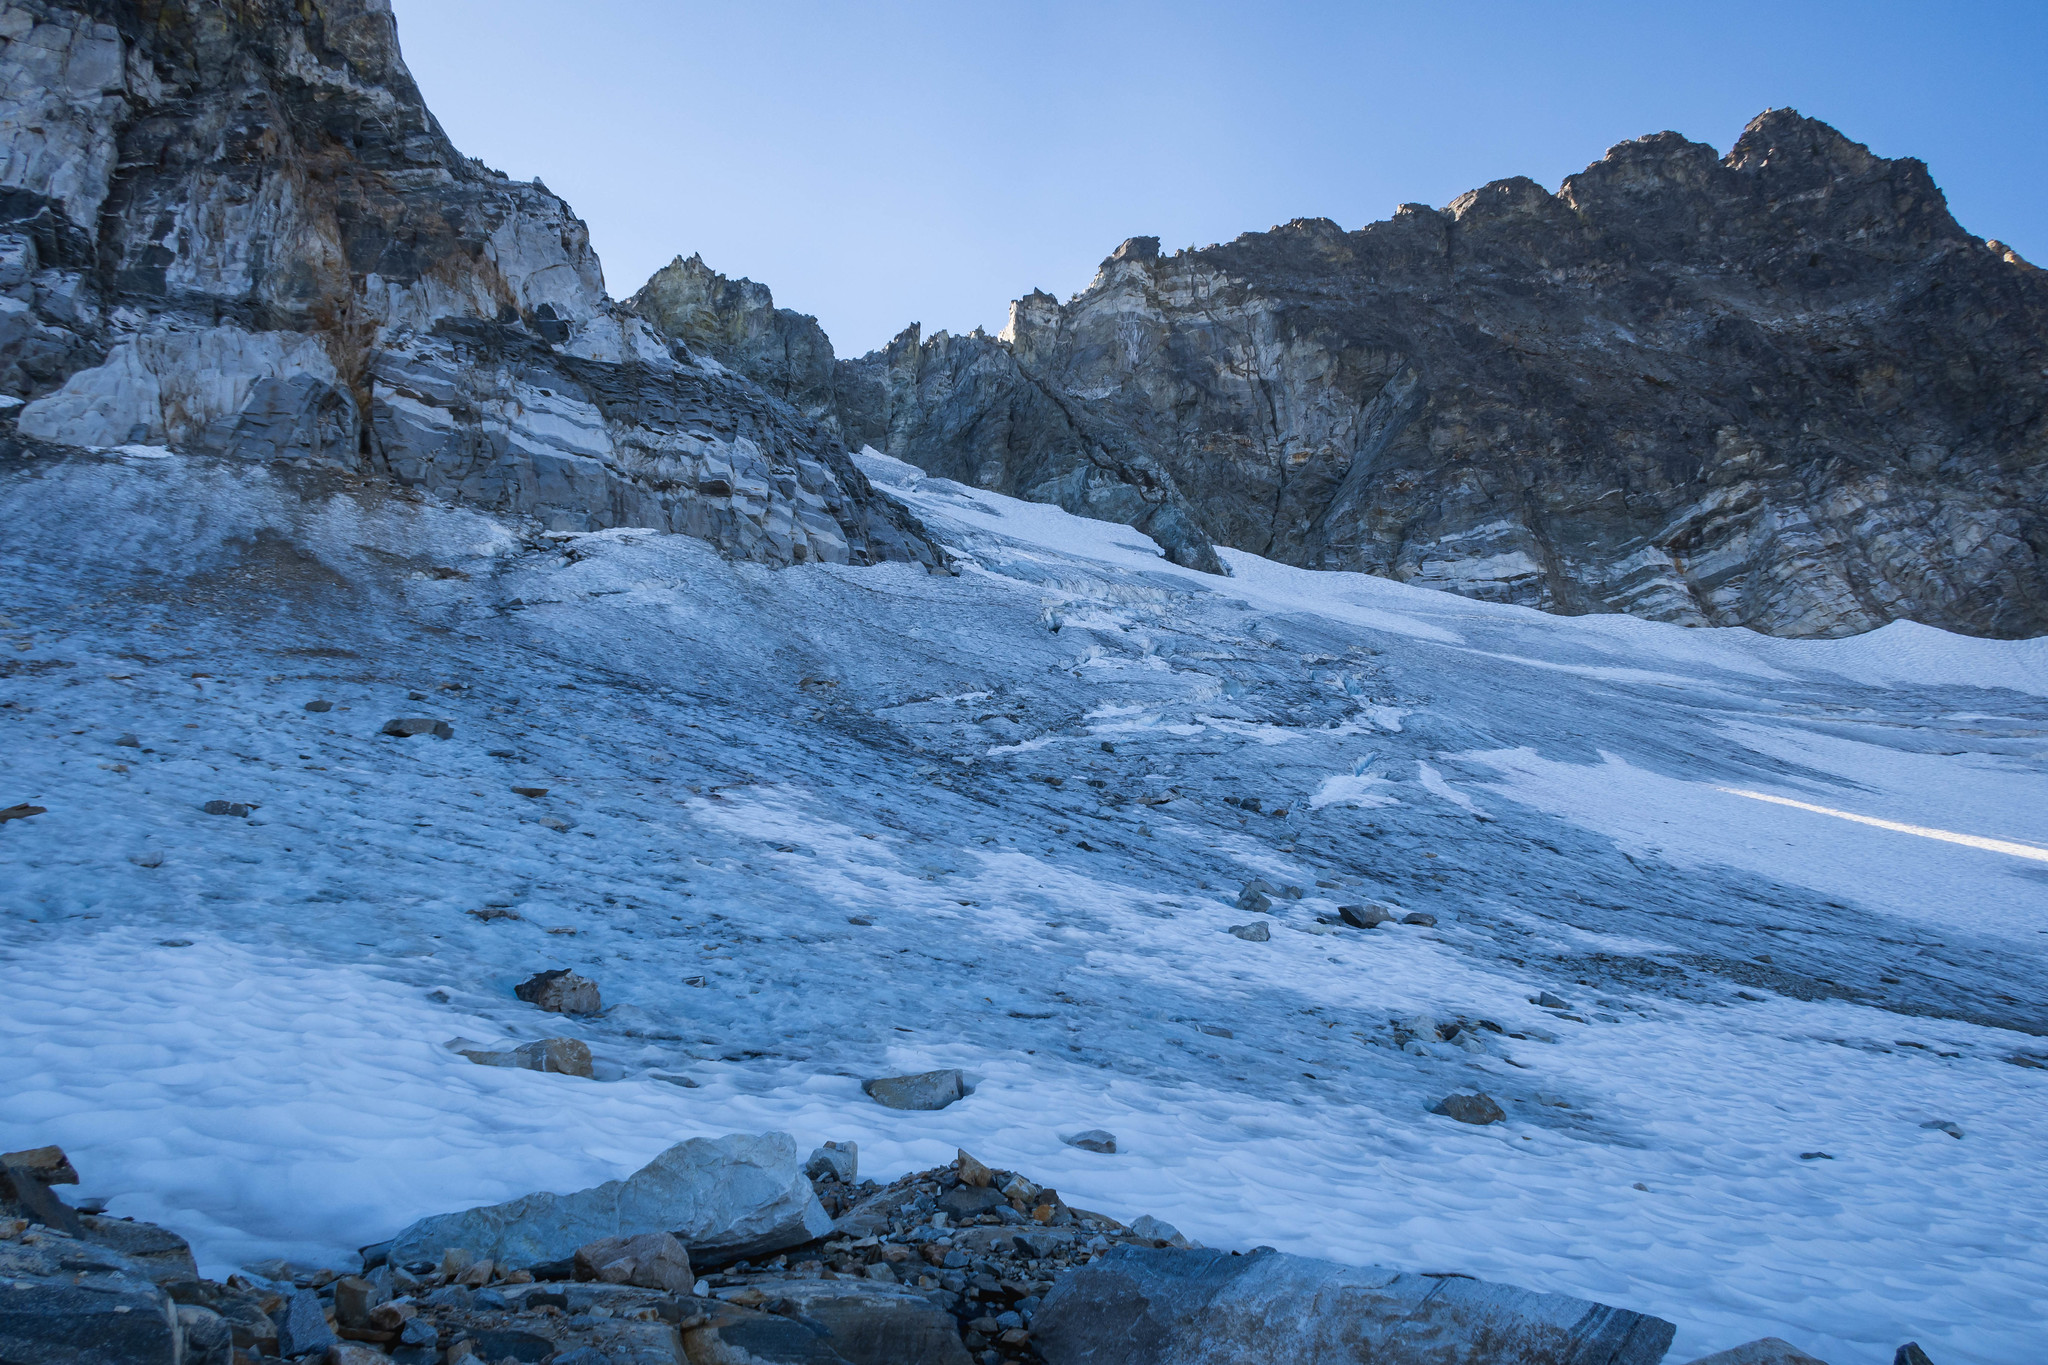 Glacier below Vulcan Peak 7880